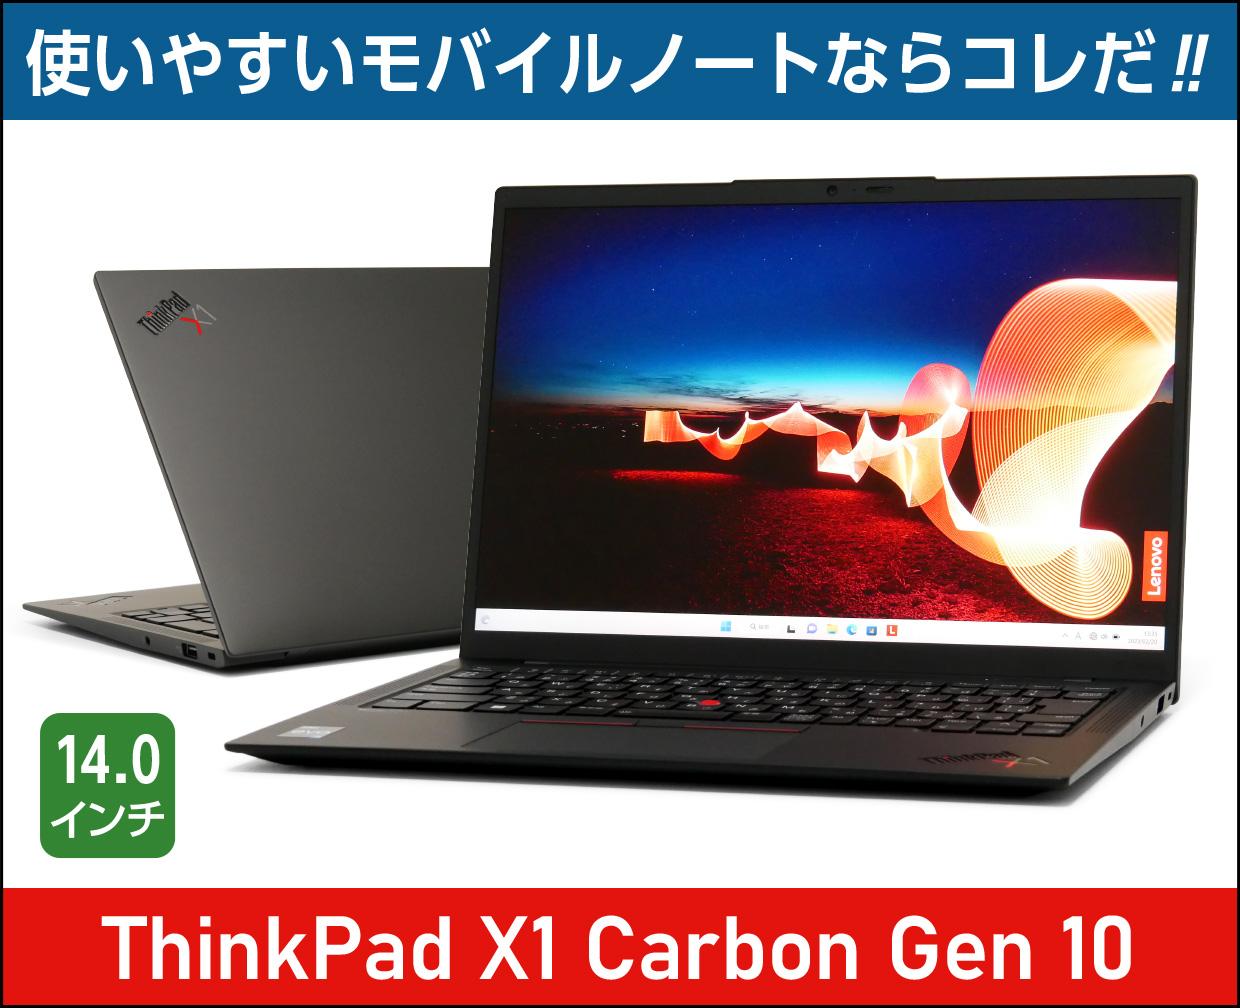 レノボ ThinkPad X1 Carbon Gen 10のメイン画像